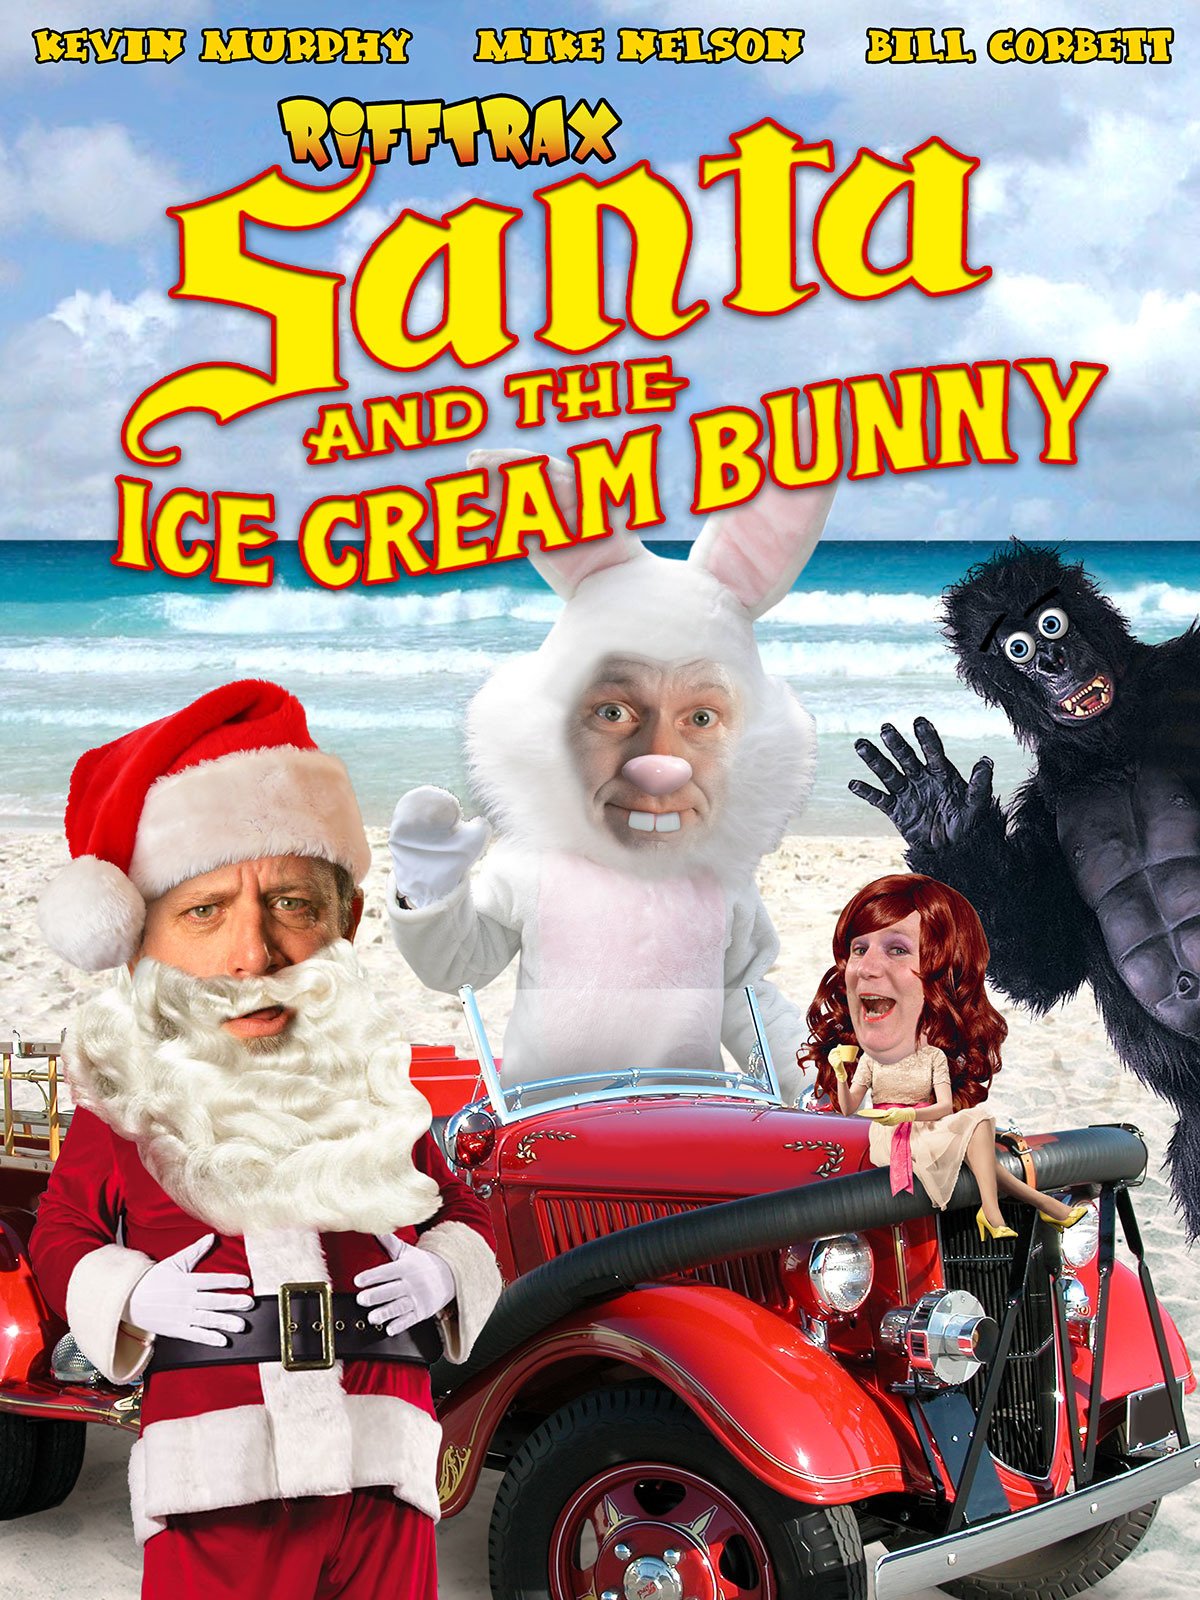 Постер к фильму «Санта и кролик из мороженого» (Santa and the Ice Cream Bunny), 1972